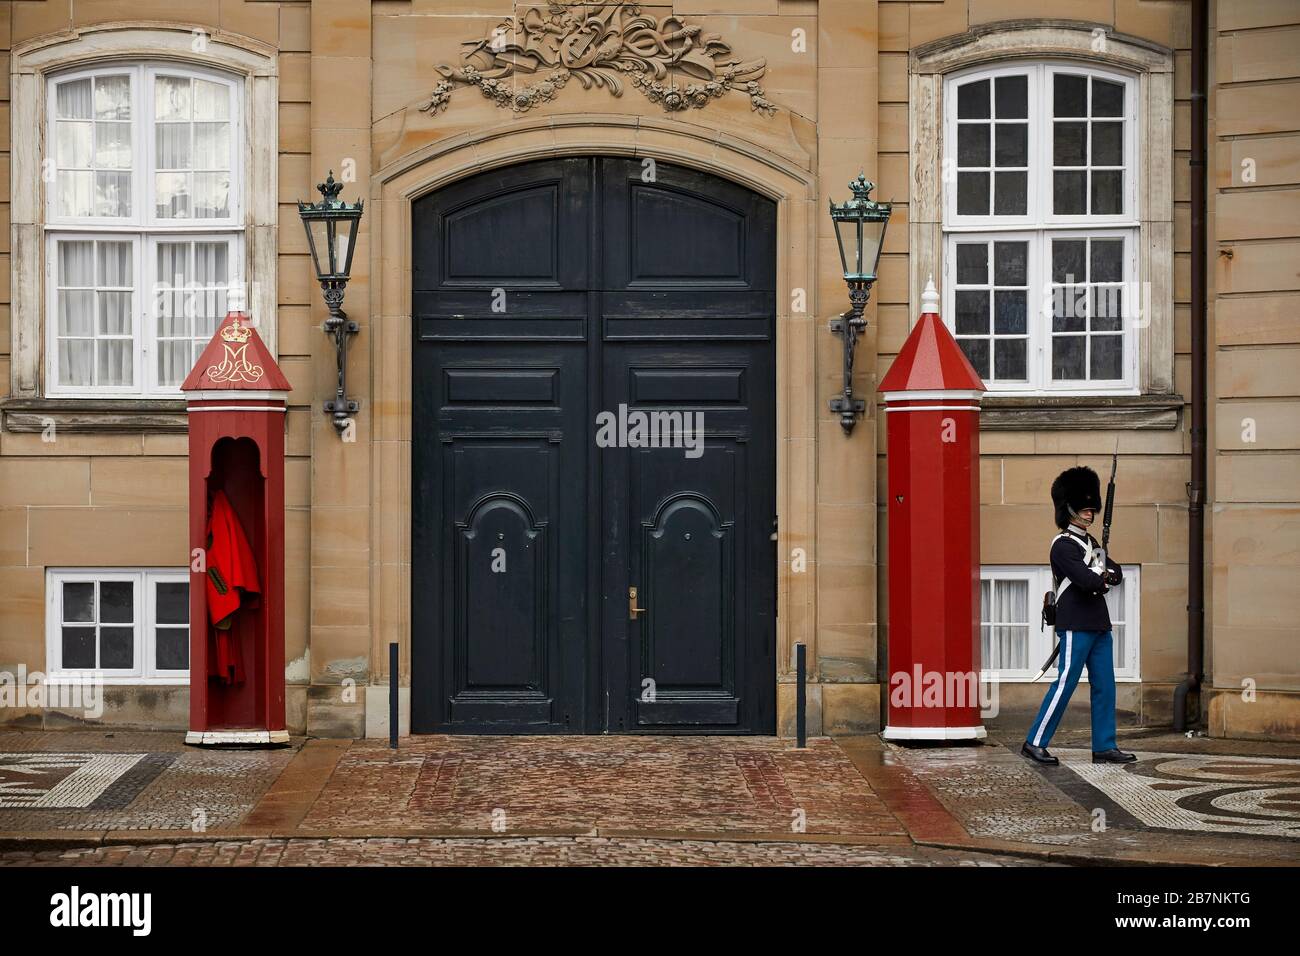 Copenhague, capitale du Danemark, Amalienborg, complexe rococo du XVIIIe siècle de palais, avec musée et marches/expositions de gardes royaux Banque D'Images